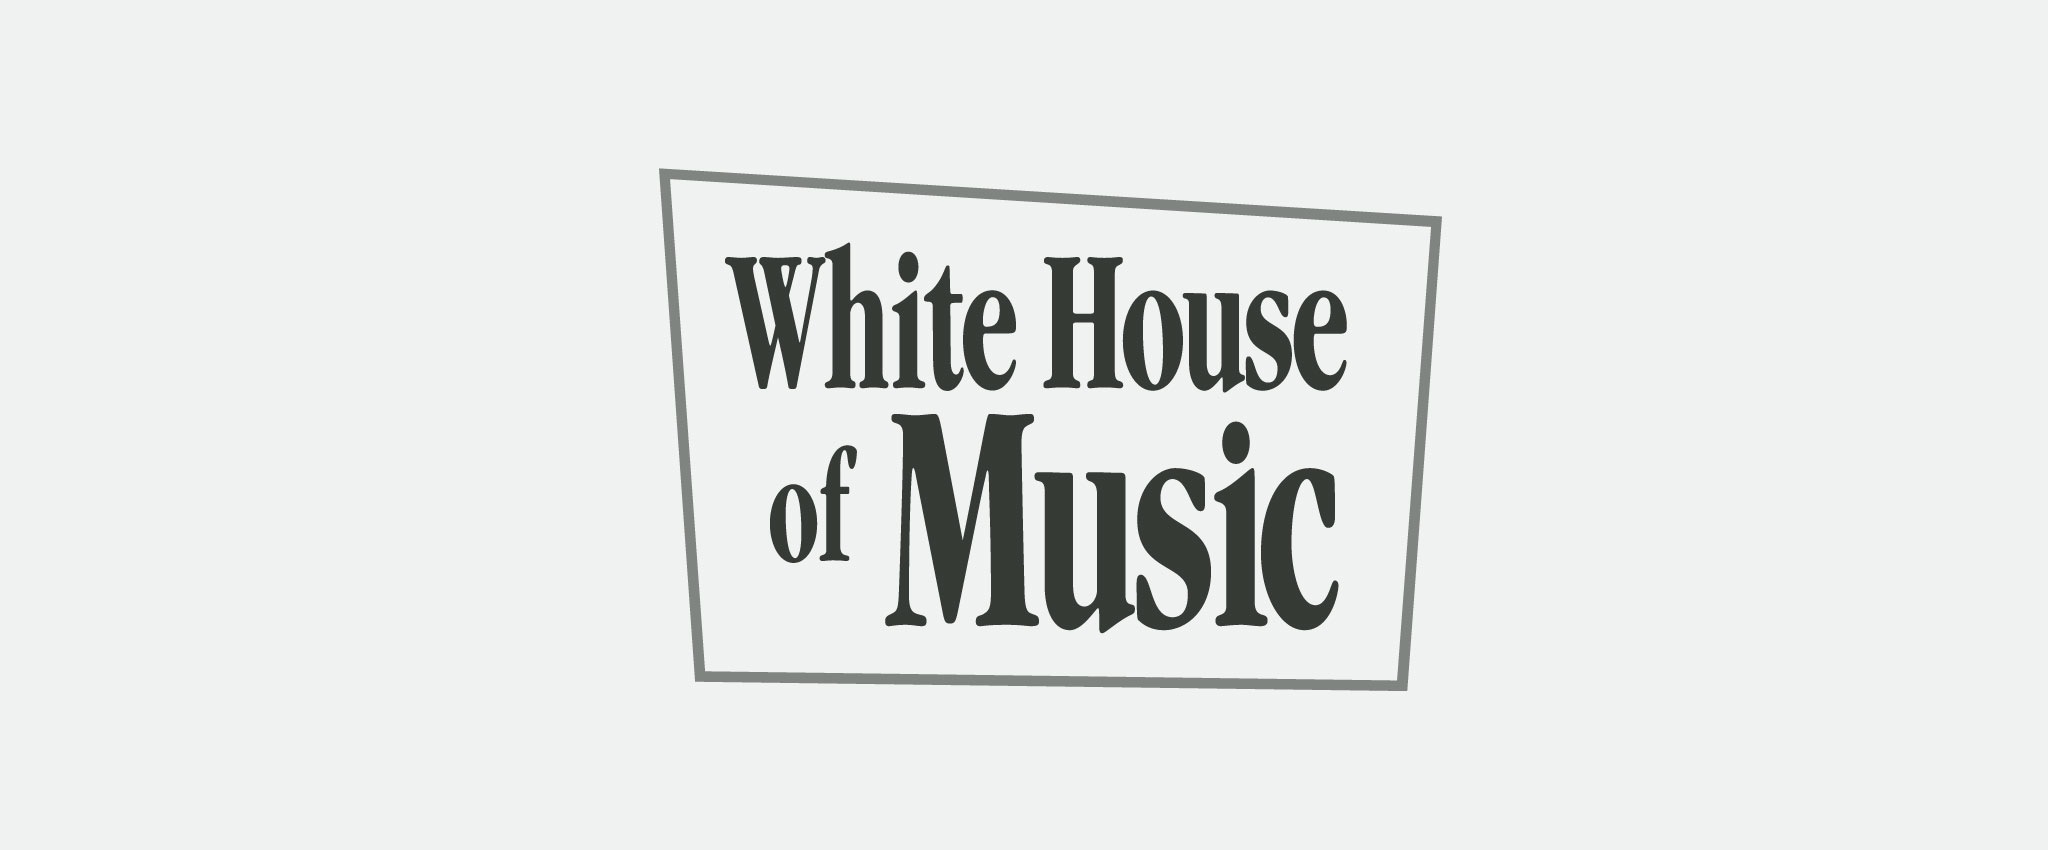 White House of Music logo stacks, full color